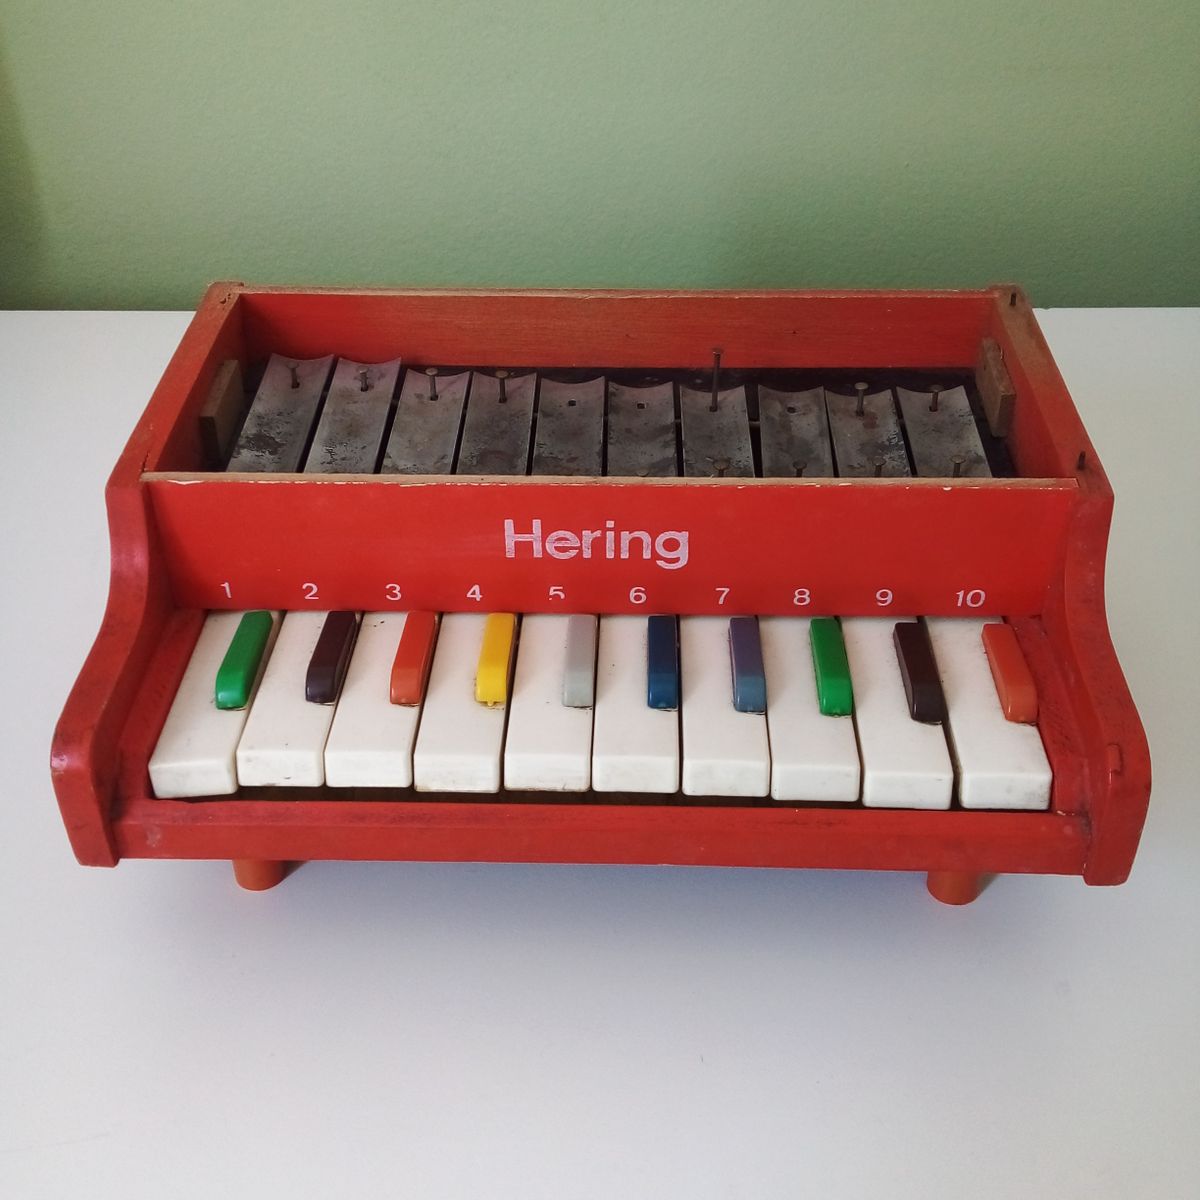 Ana Caldatto : Coleção Antigos Brinquedos Musicais Hering